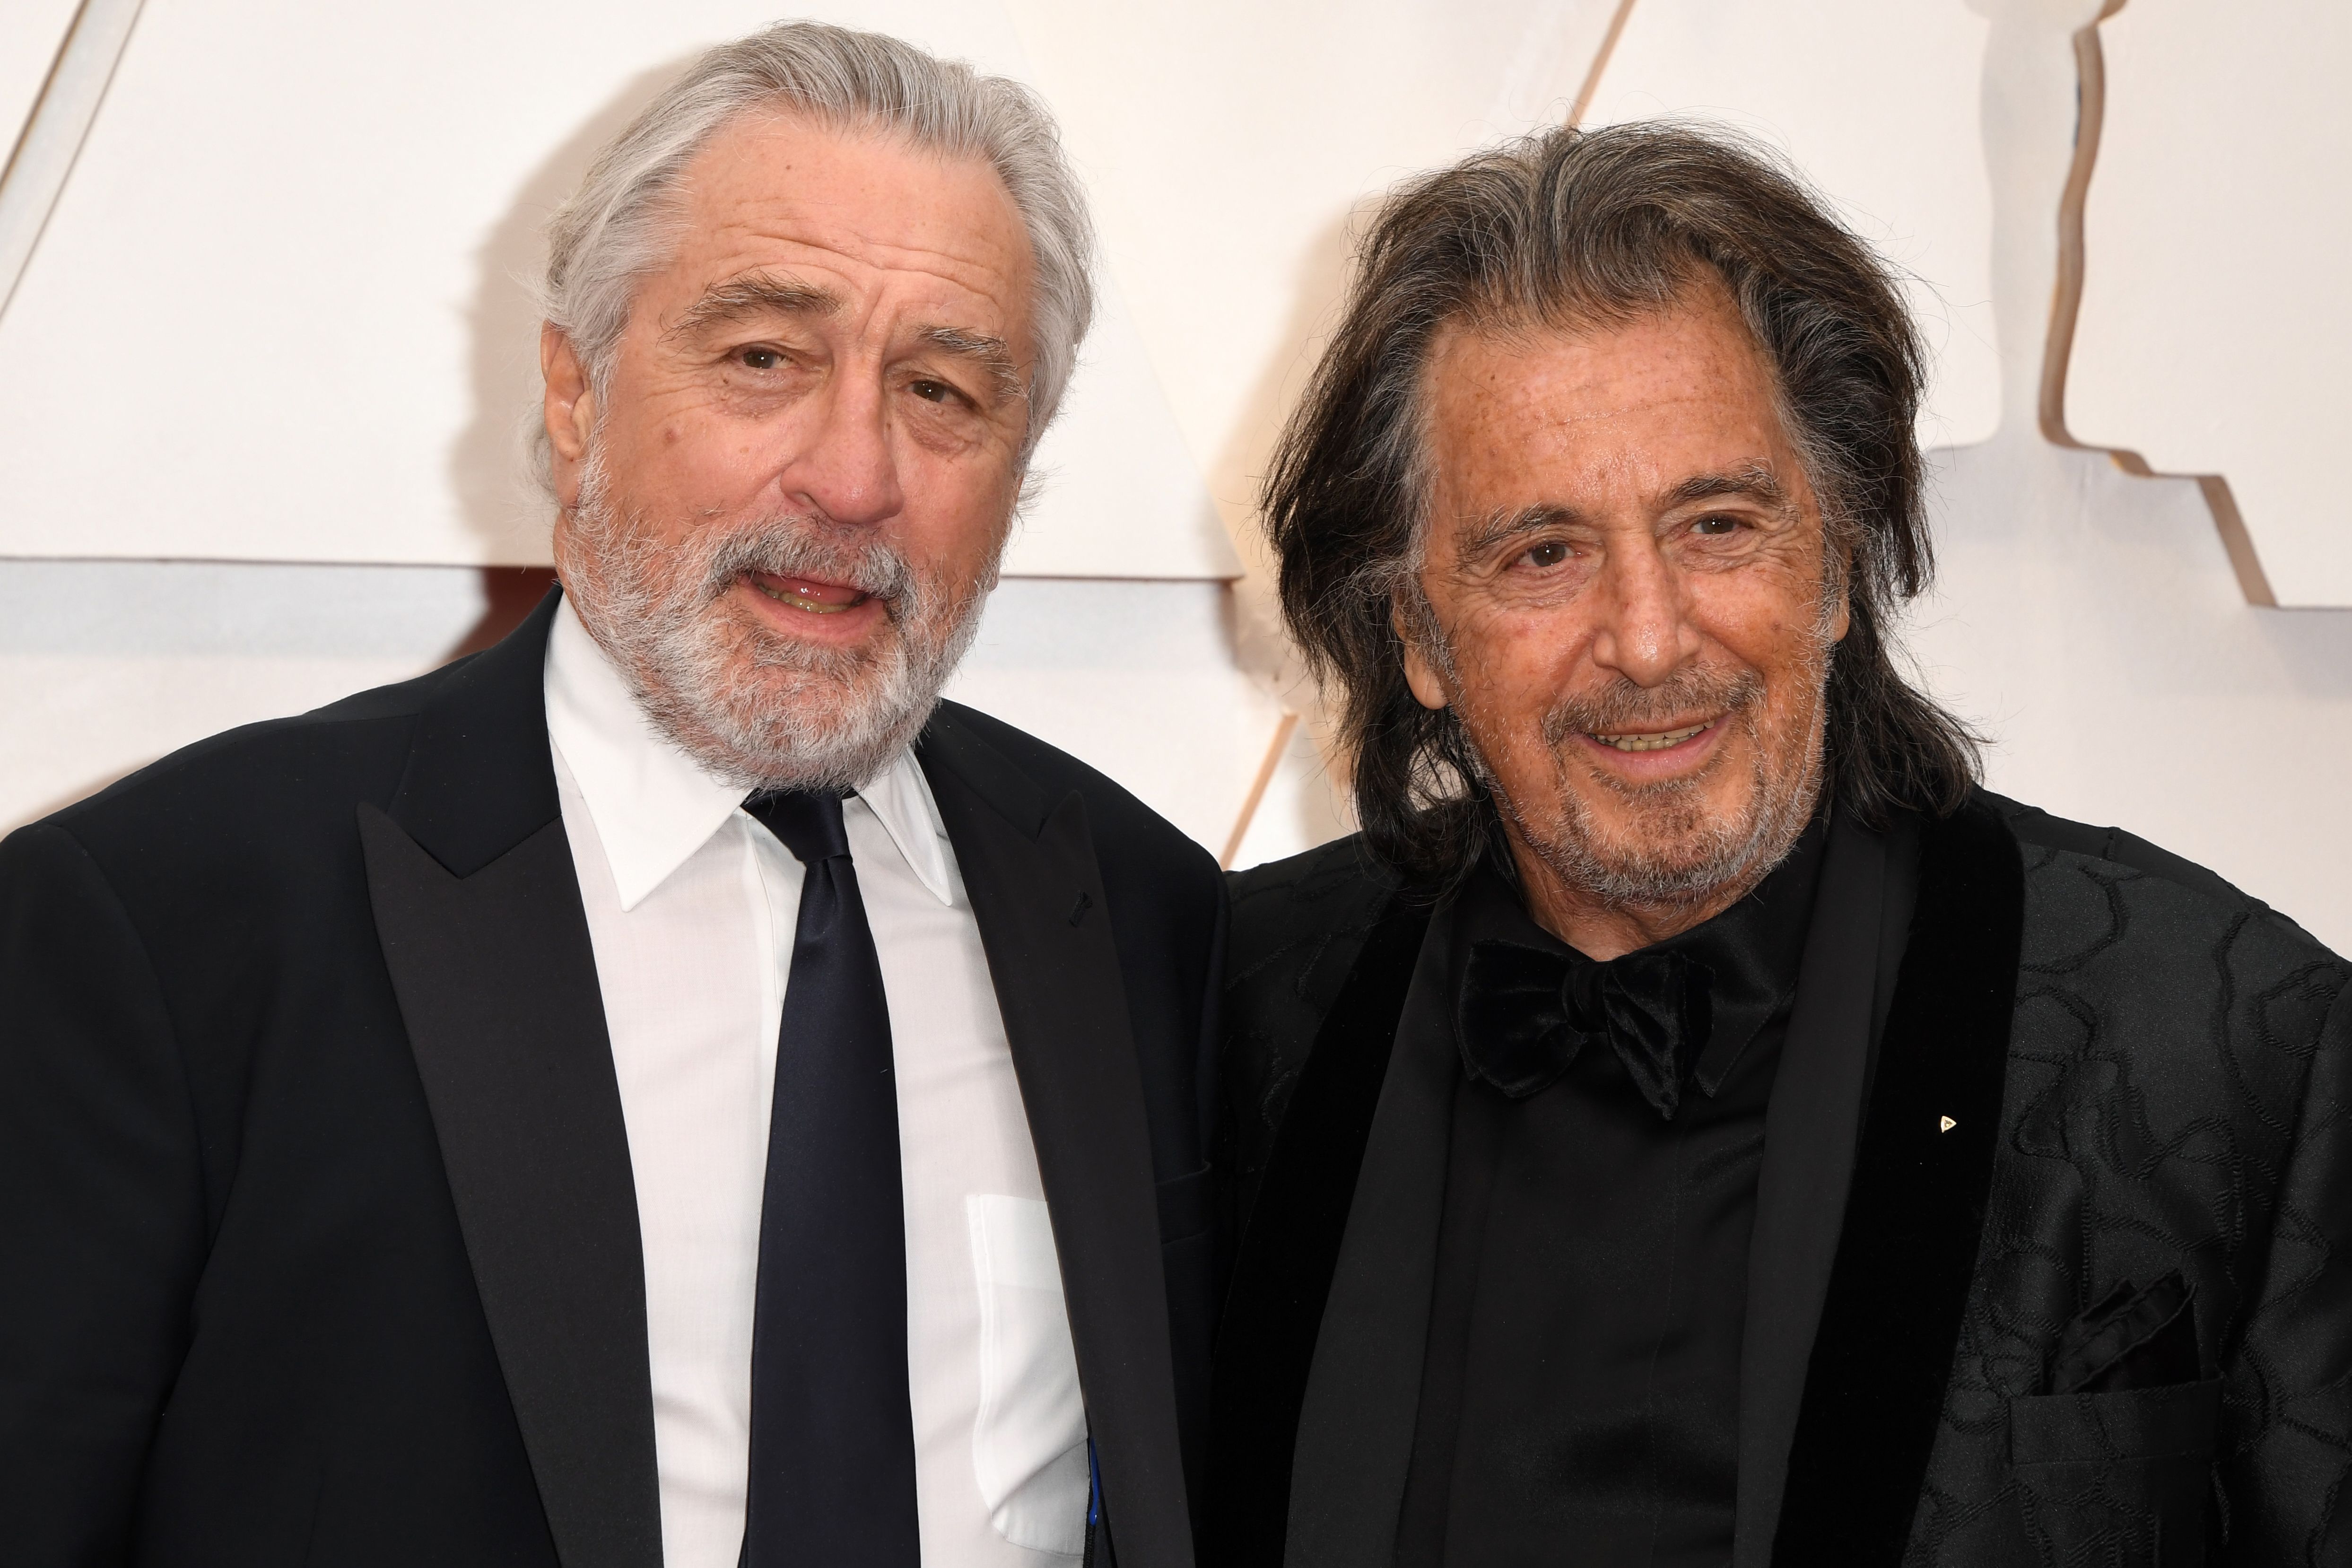 Robert De Niro et Al Pacino à Hollywood, Californie, le 9 février 2020 | Source : Getty Images